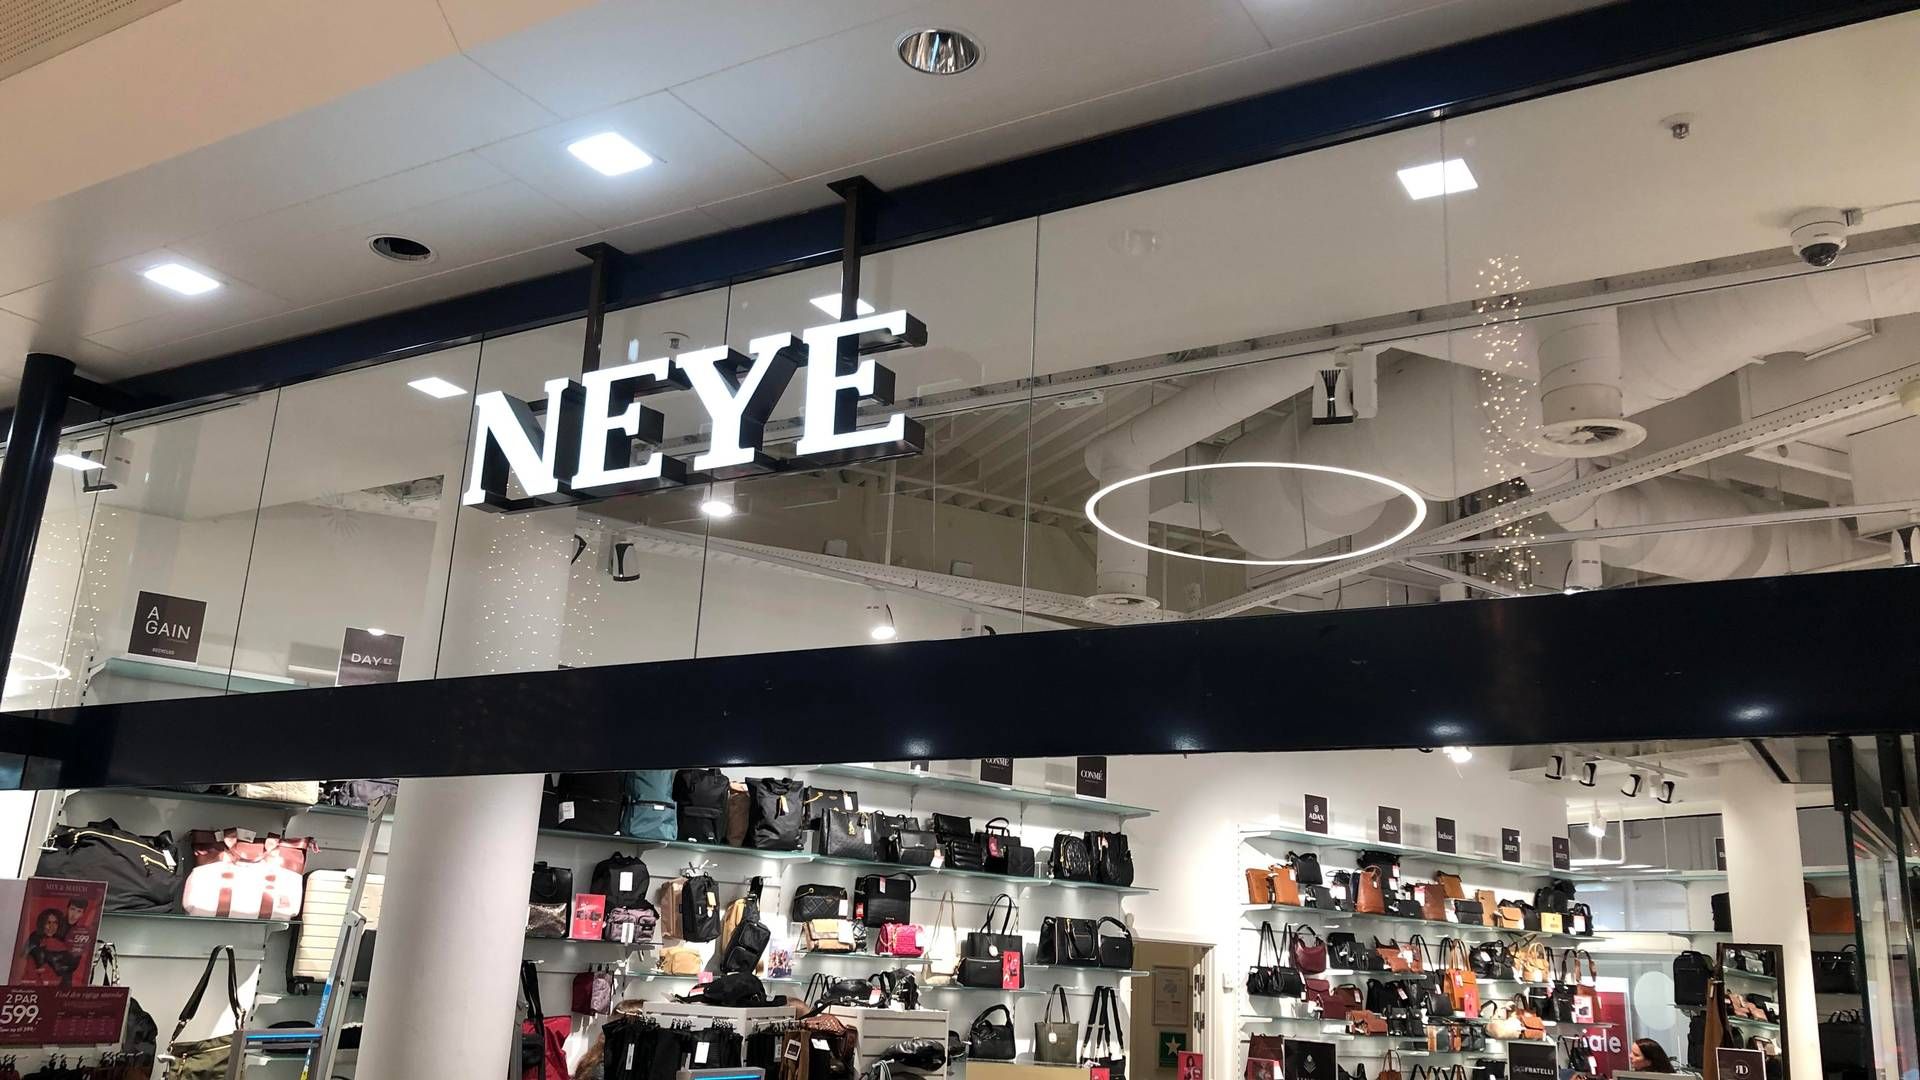 Neye-kæden er ejet af Neye-Fonden, der ud over at drive butikskæden har en god håndfuld ejedomsselskaber i porteføljen. | Foto: Alexander Thorup/detailwatch